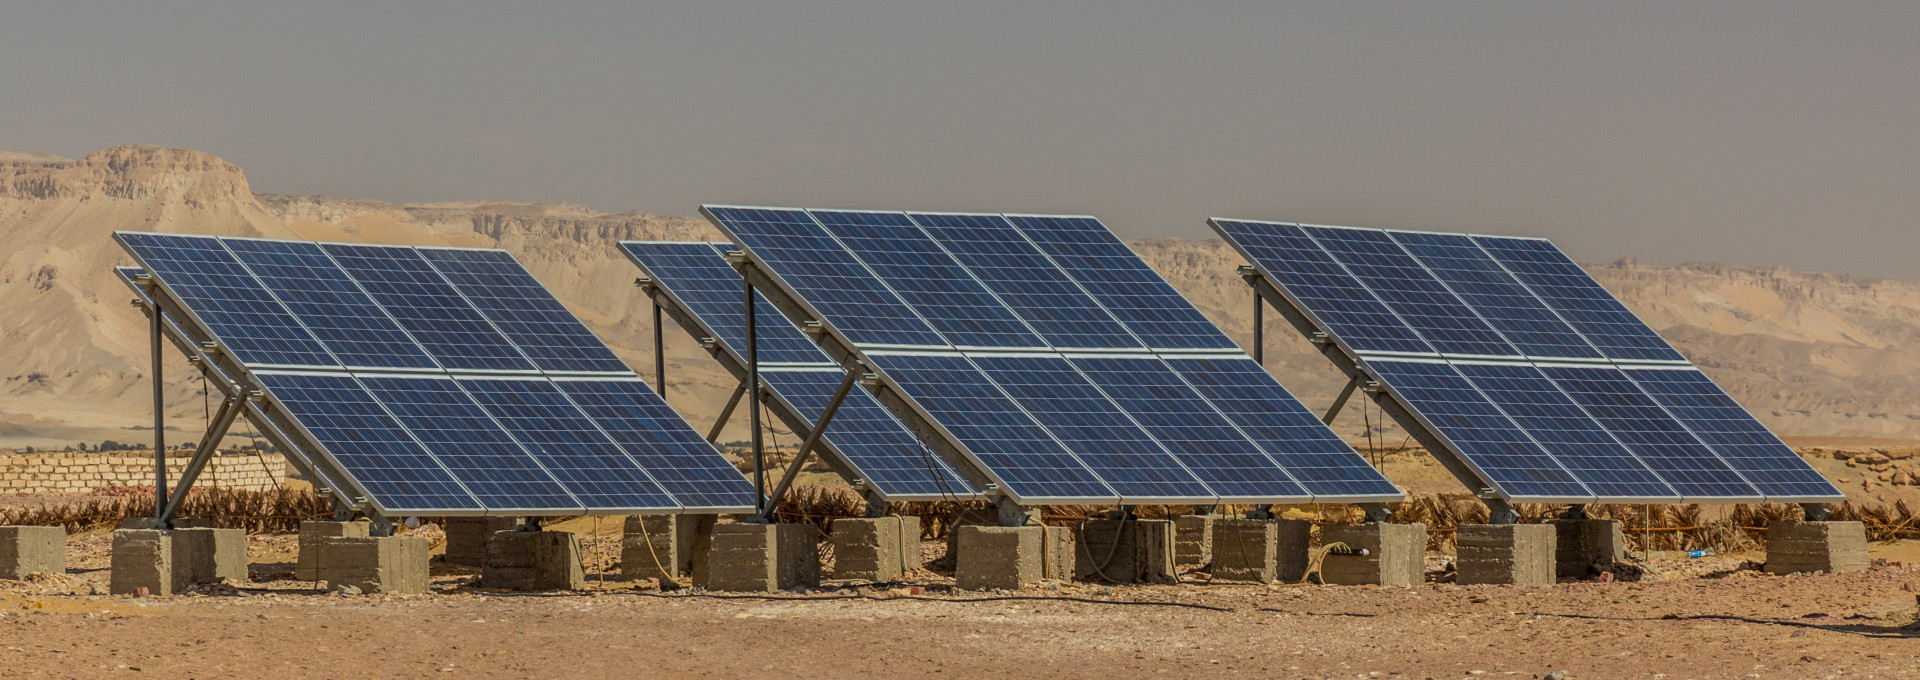 Sonnenkollektoren in der Oase Dakhla, Ägypten